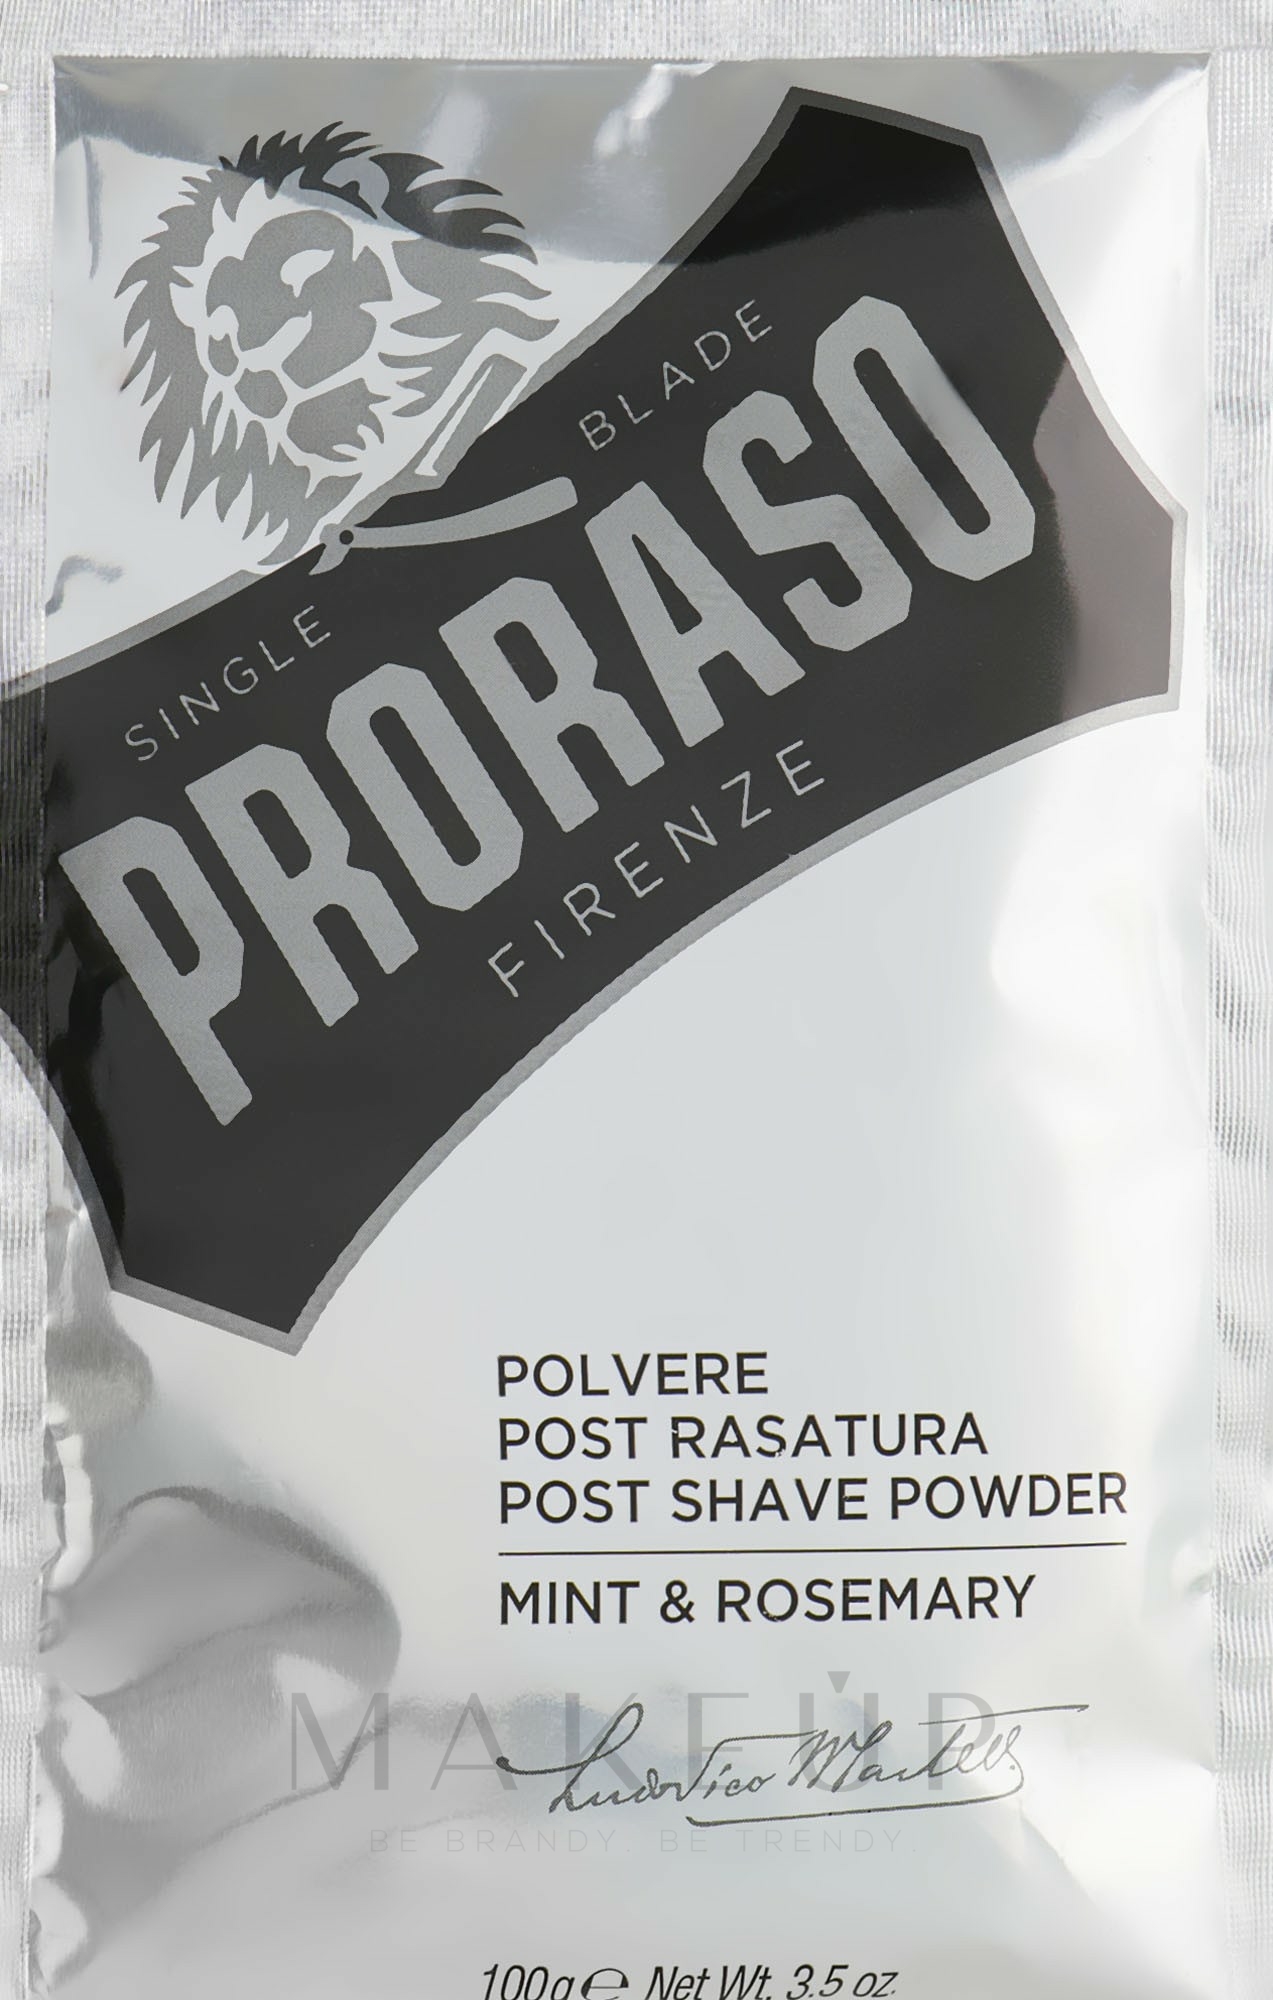 After Shave Puder mit Minze und Rosmarin - Post Shave Powder Mint & Rosemary — Foto 100 g